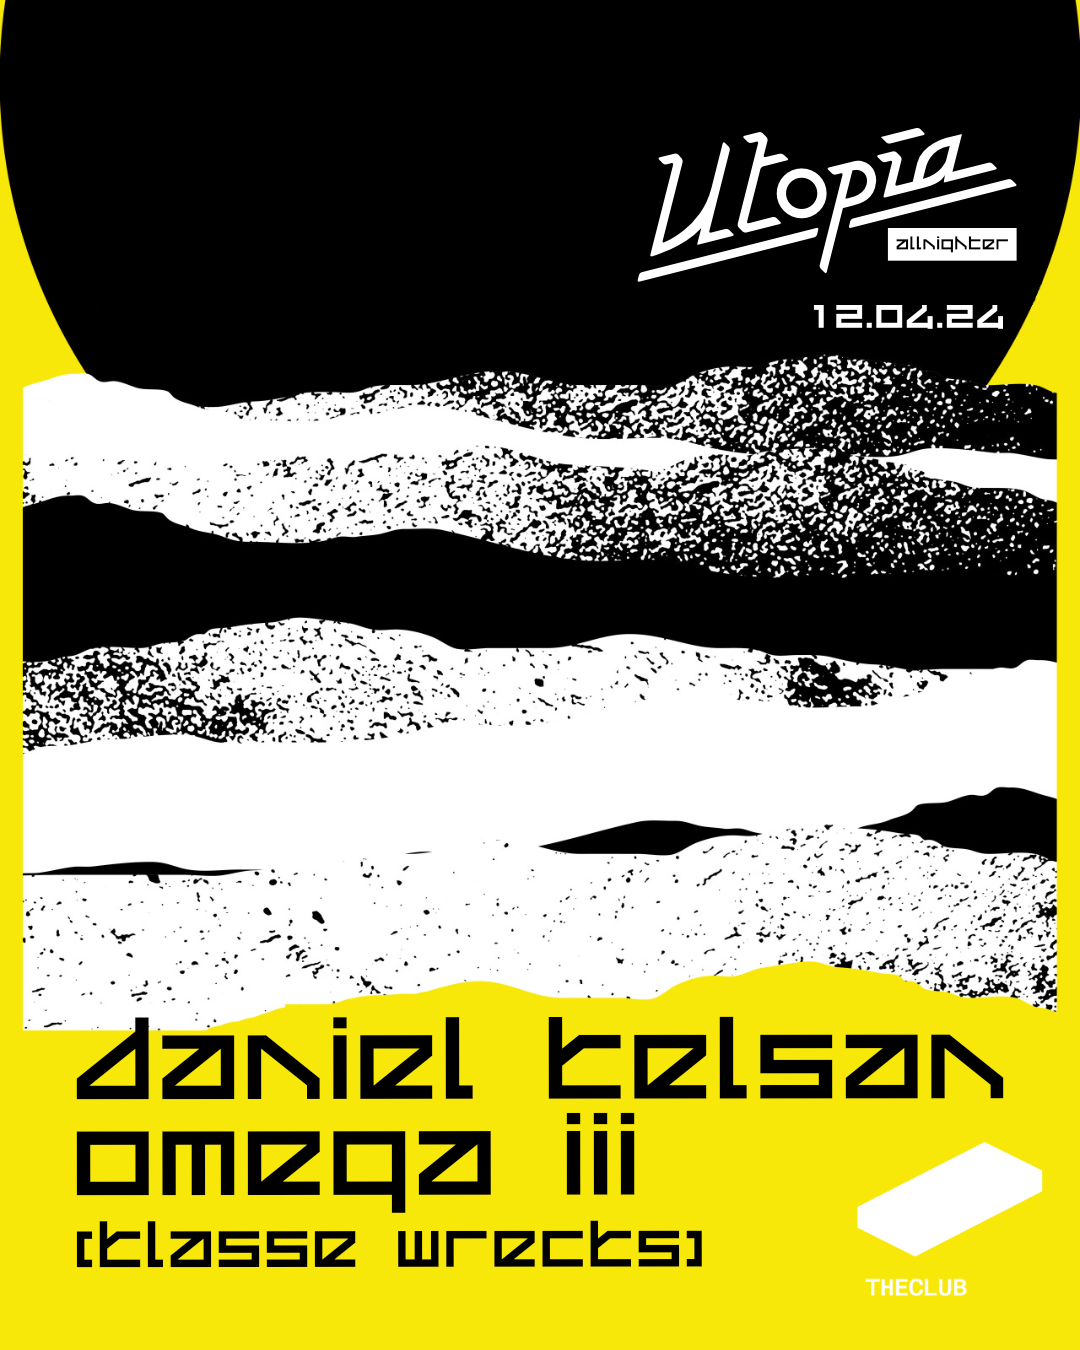 Utopía All-nighter: Daniel Kelsan + Omega III - Página frontal